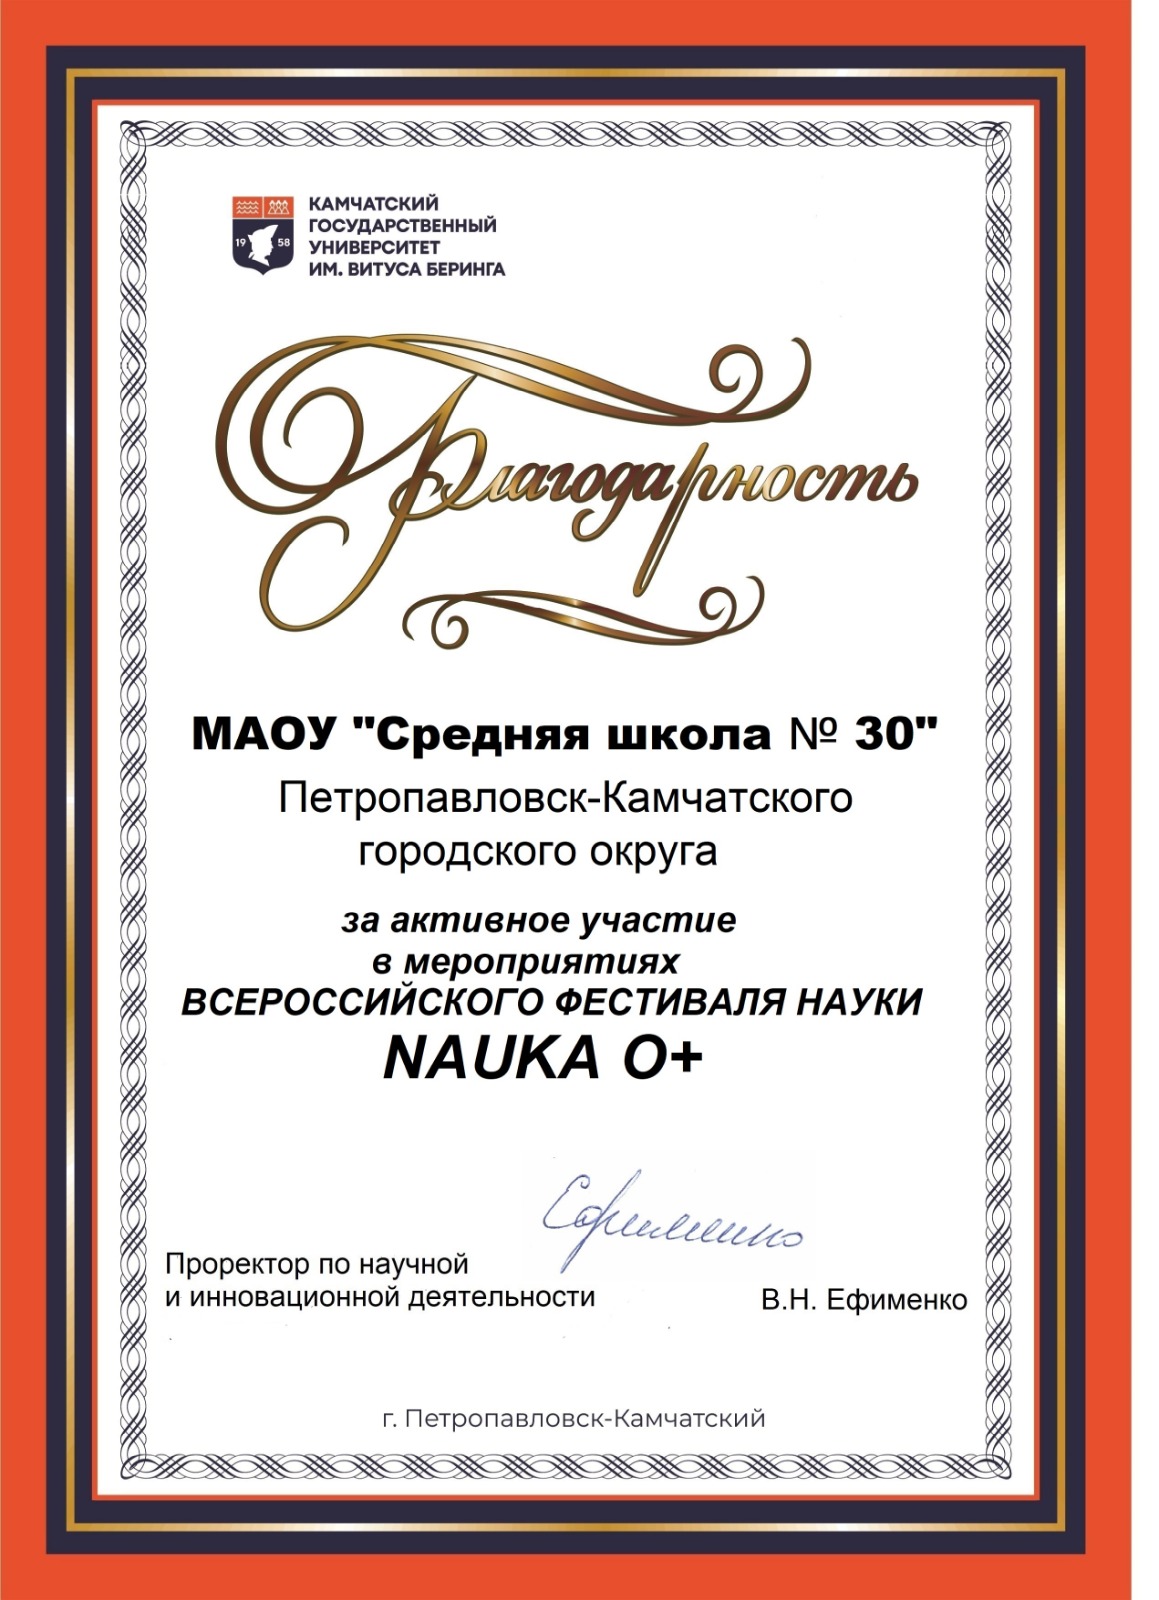 Всероссийский фестиваль науки NAUKA 0+.